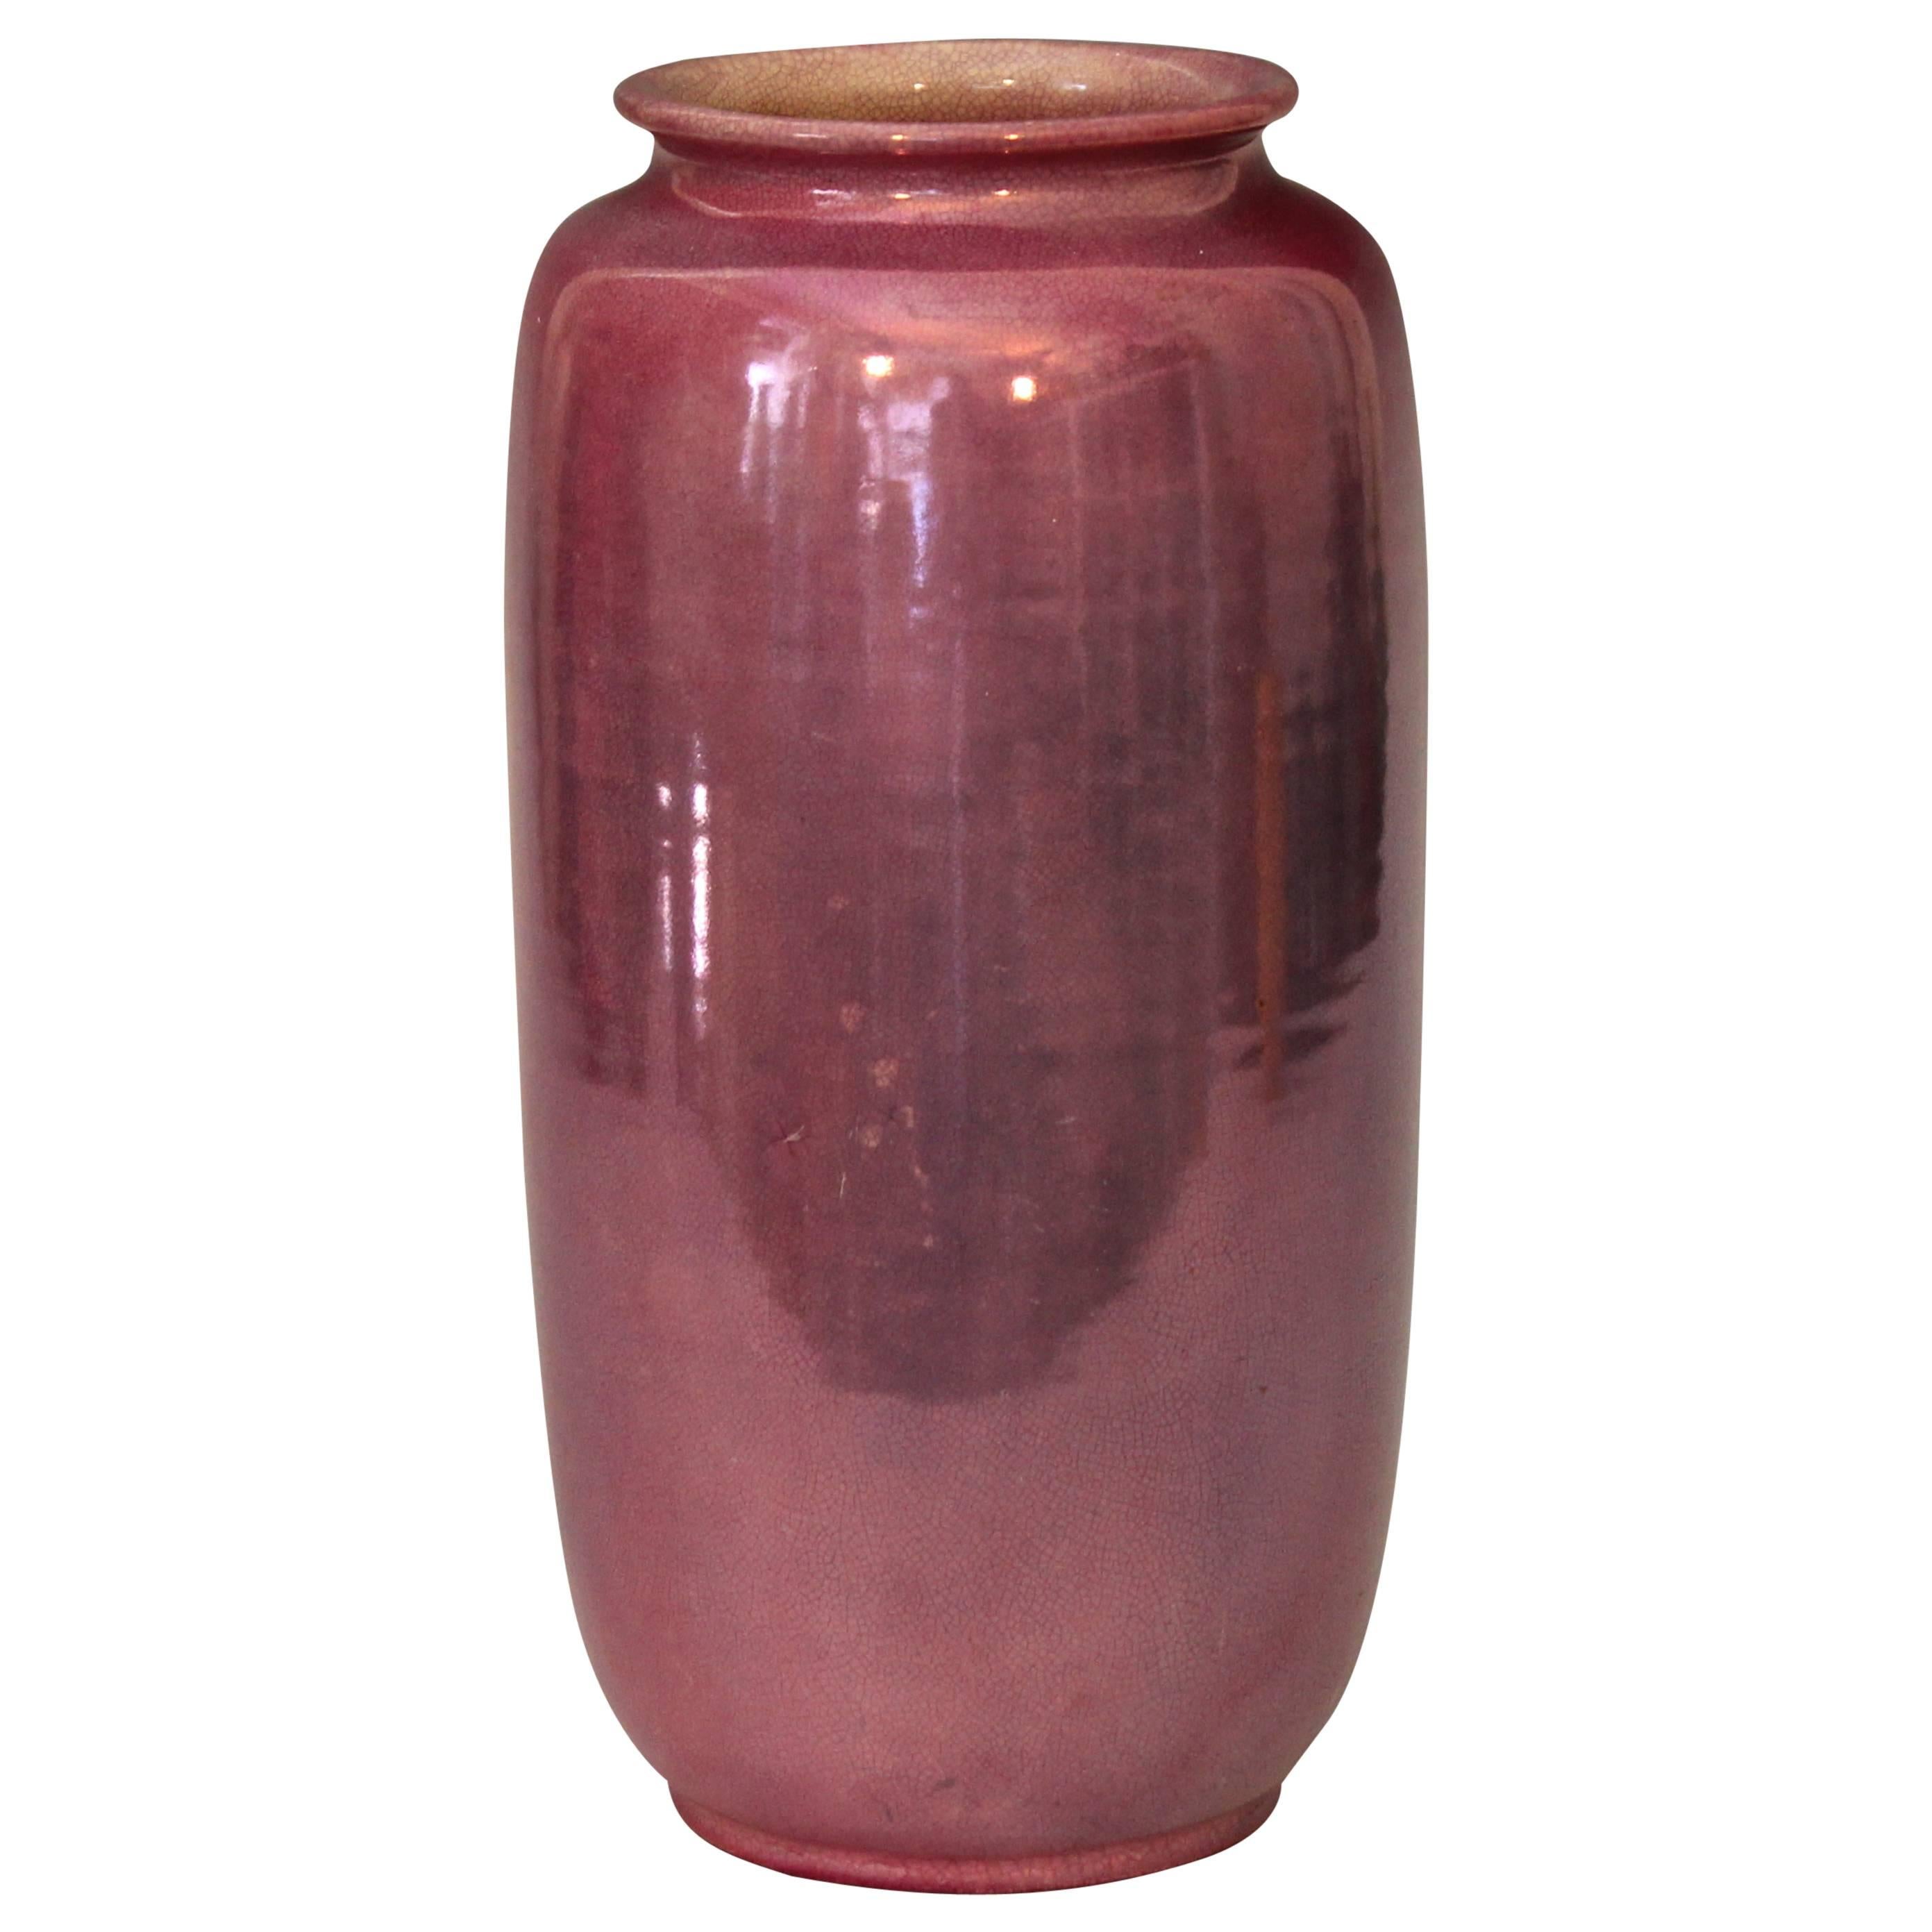 Awaji Pottery Purple Luster Tea Cannister Jar Vase